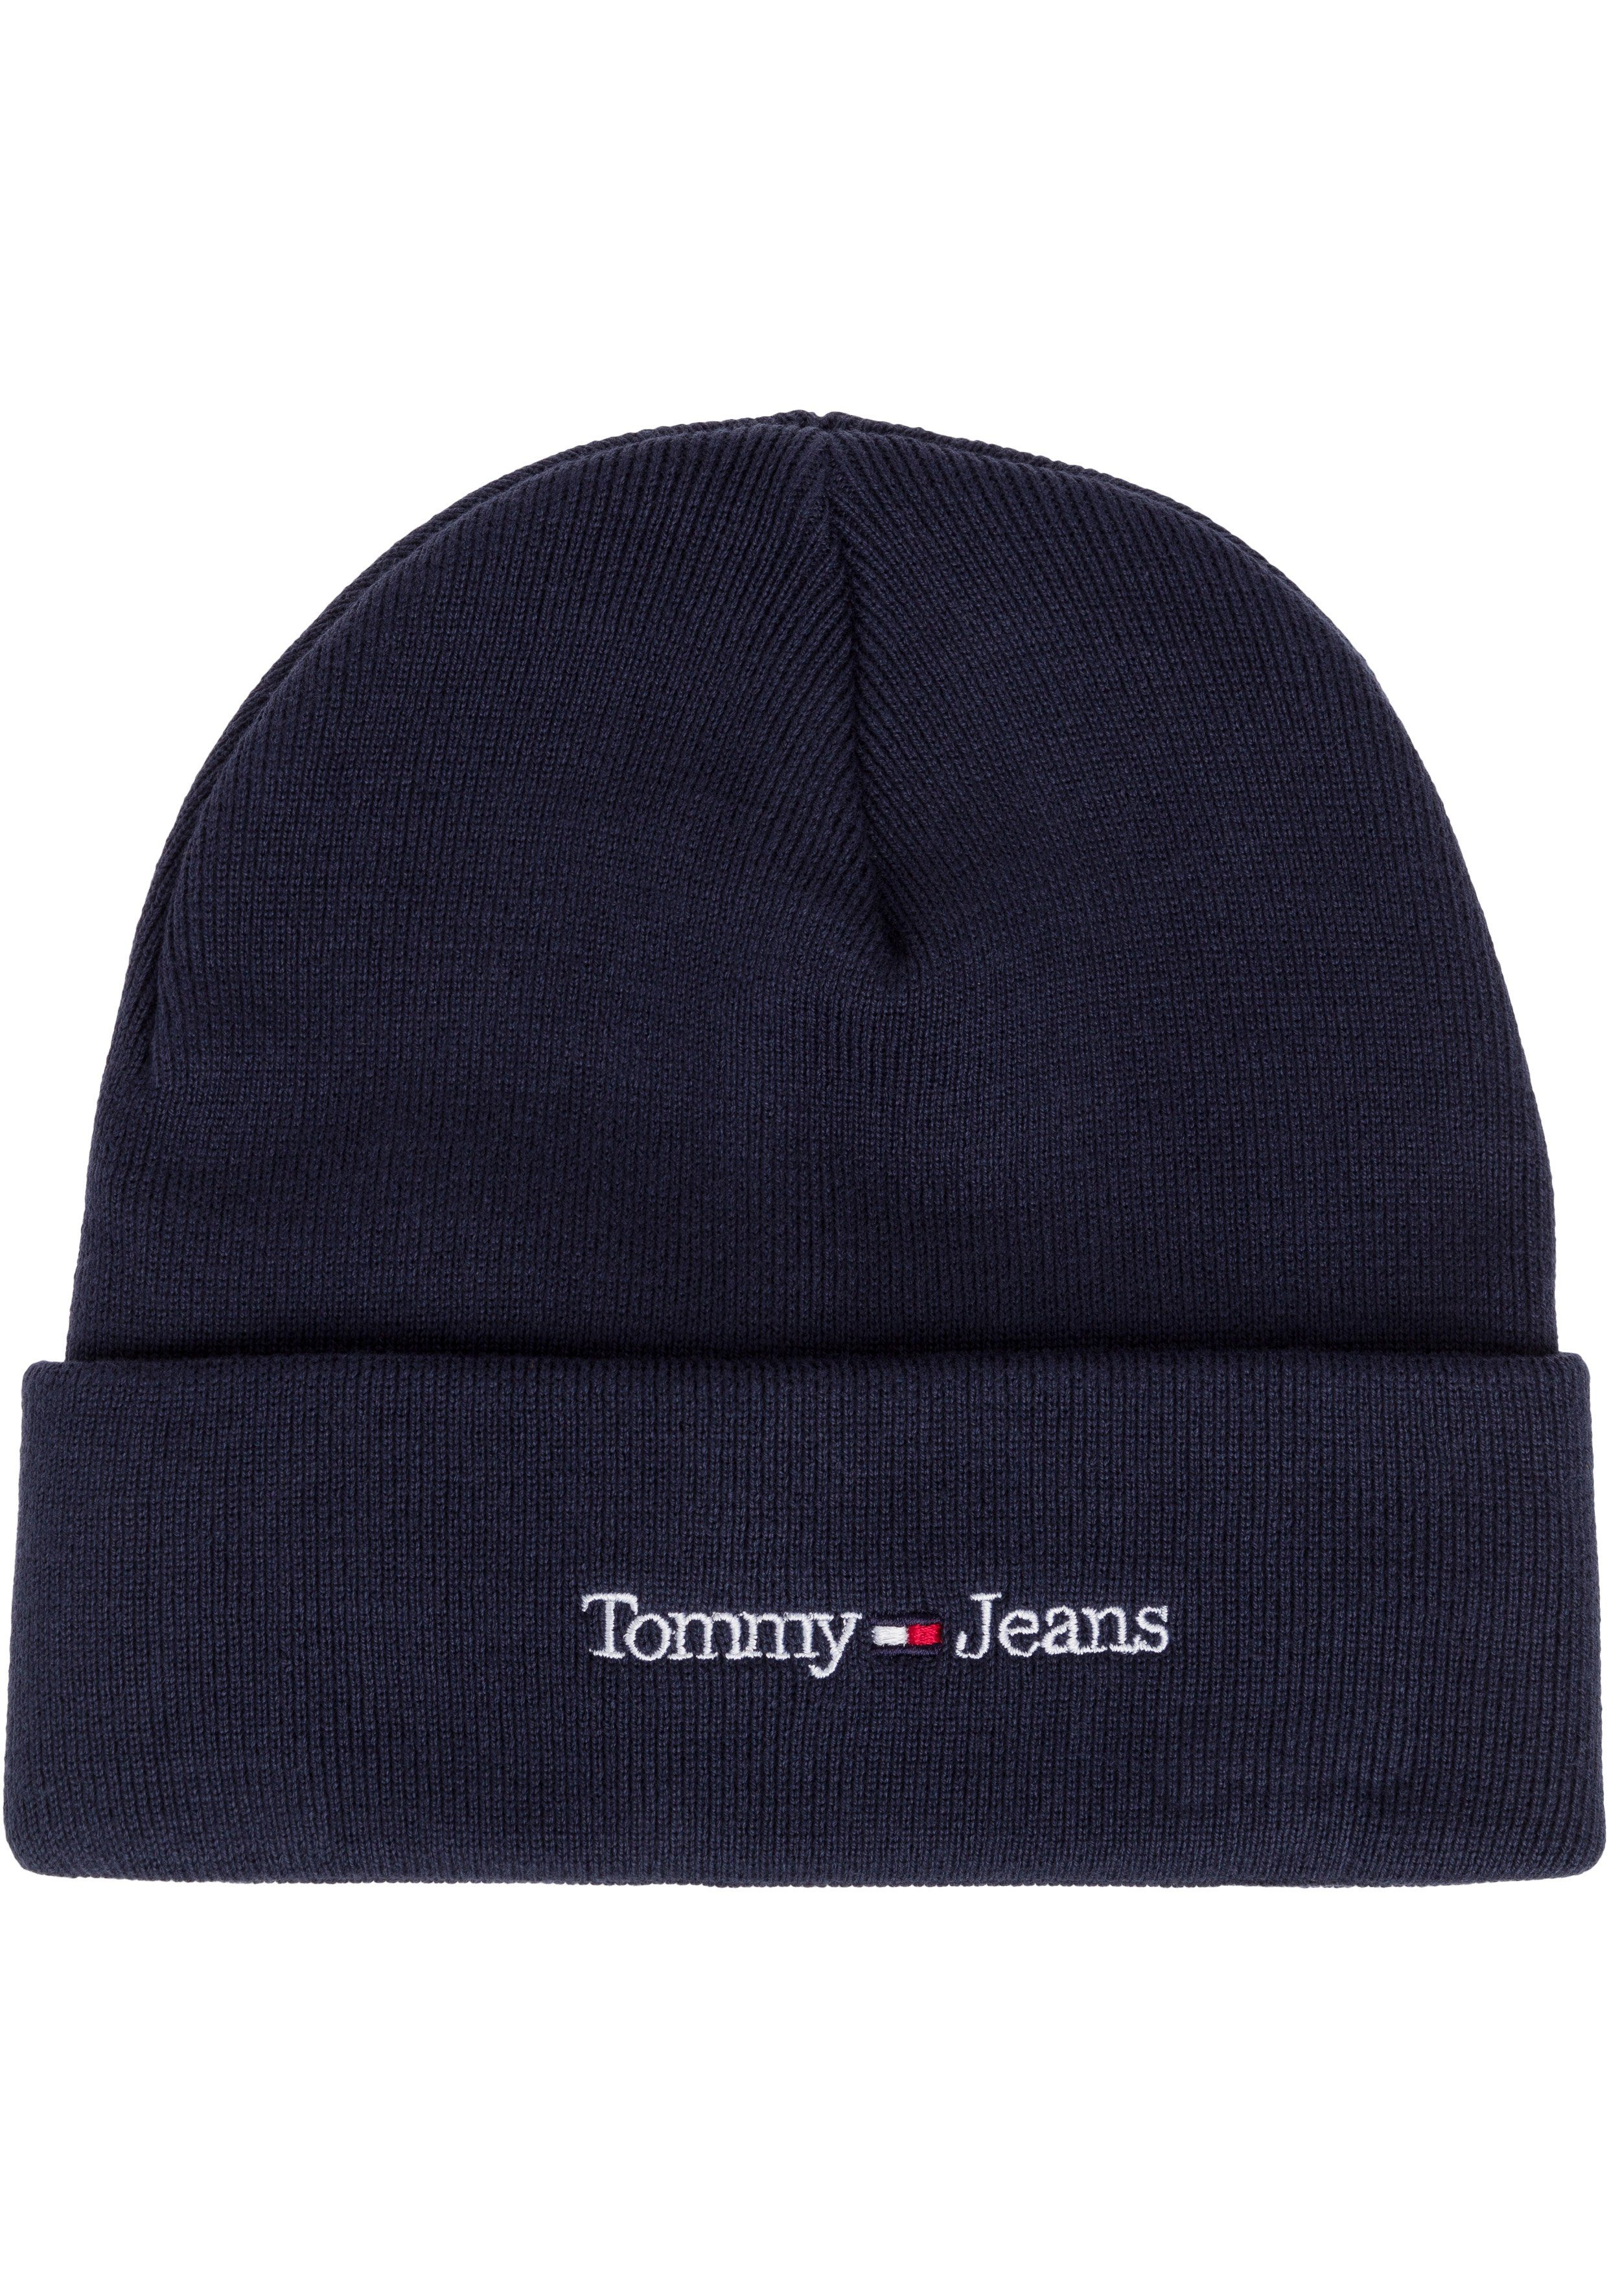 Tommy Jeans Beanie cooler Style mit wärmenden Eigenschaften navy